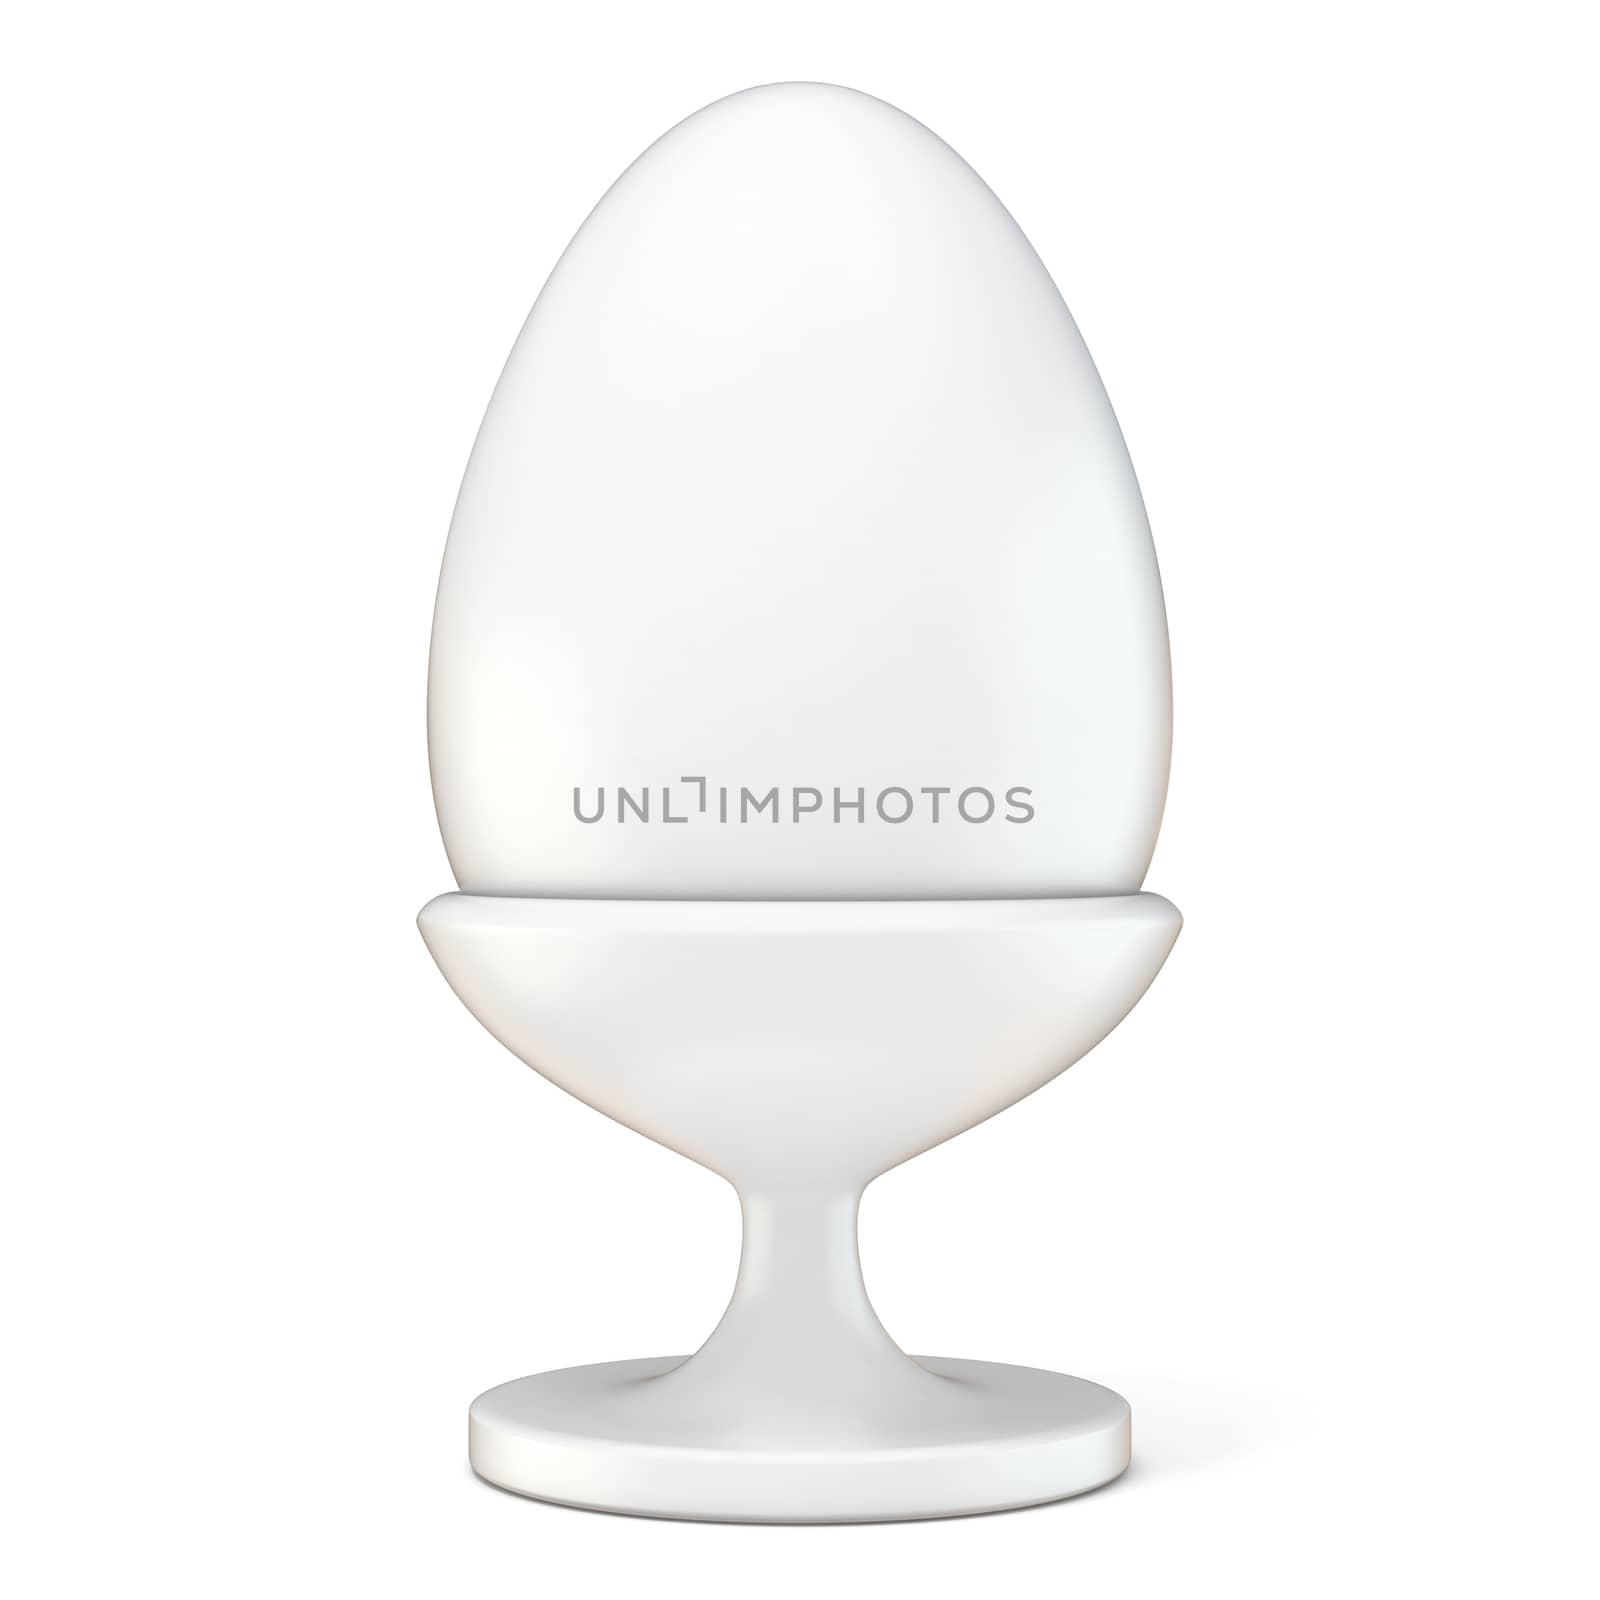 White Easter egg on ceramic holder. 3D render illustration isolated on white background